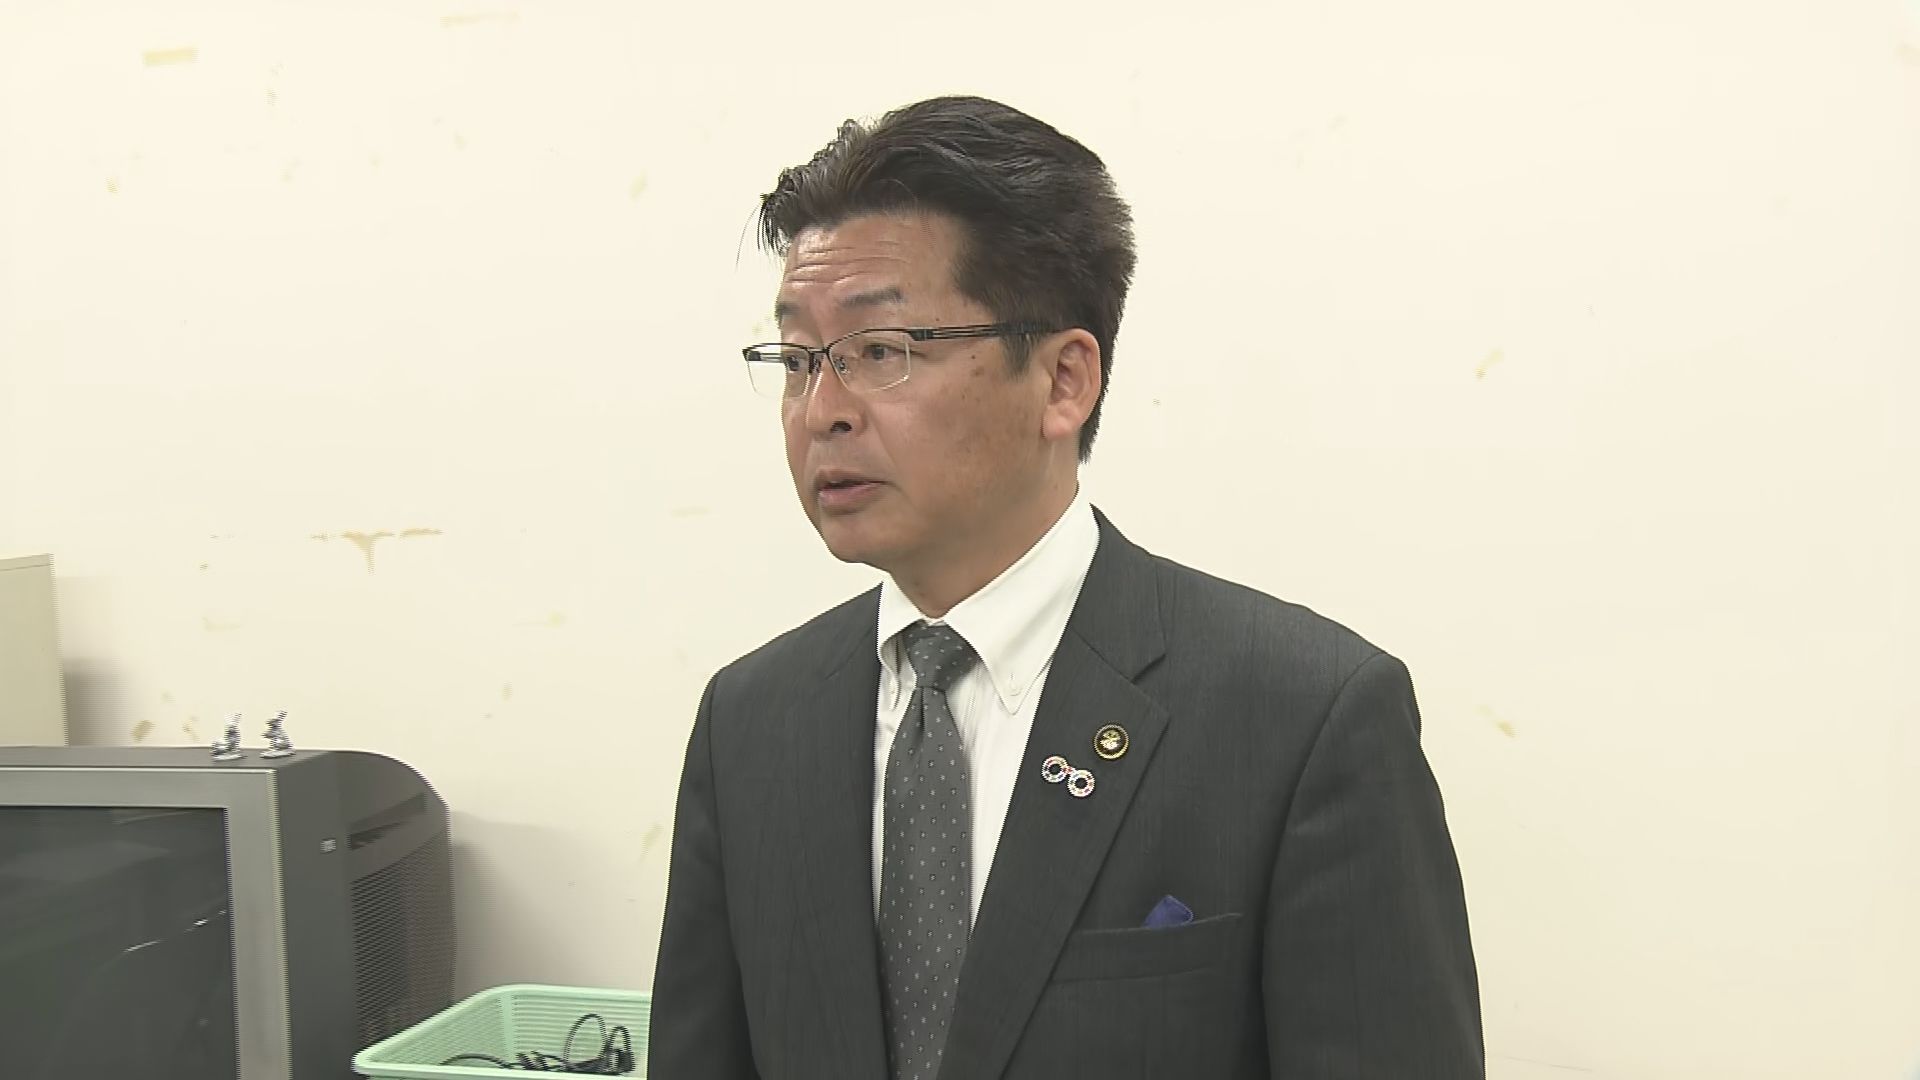 鯖江市長ら不起訴　嫌疑不十分、百条委員会で嘘の発言した疑い　ごみ処理施施設の建て替え工事